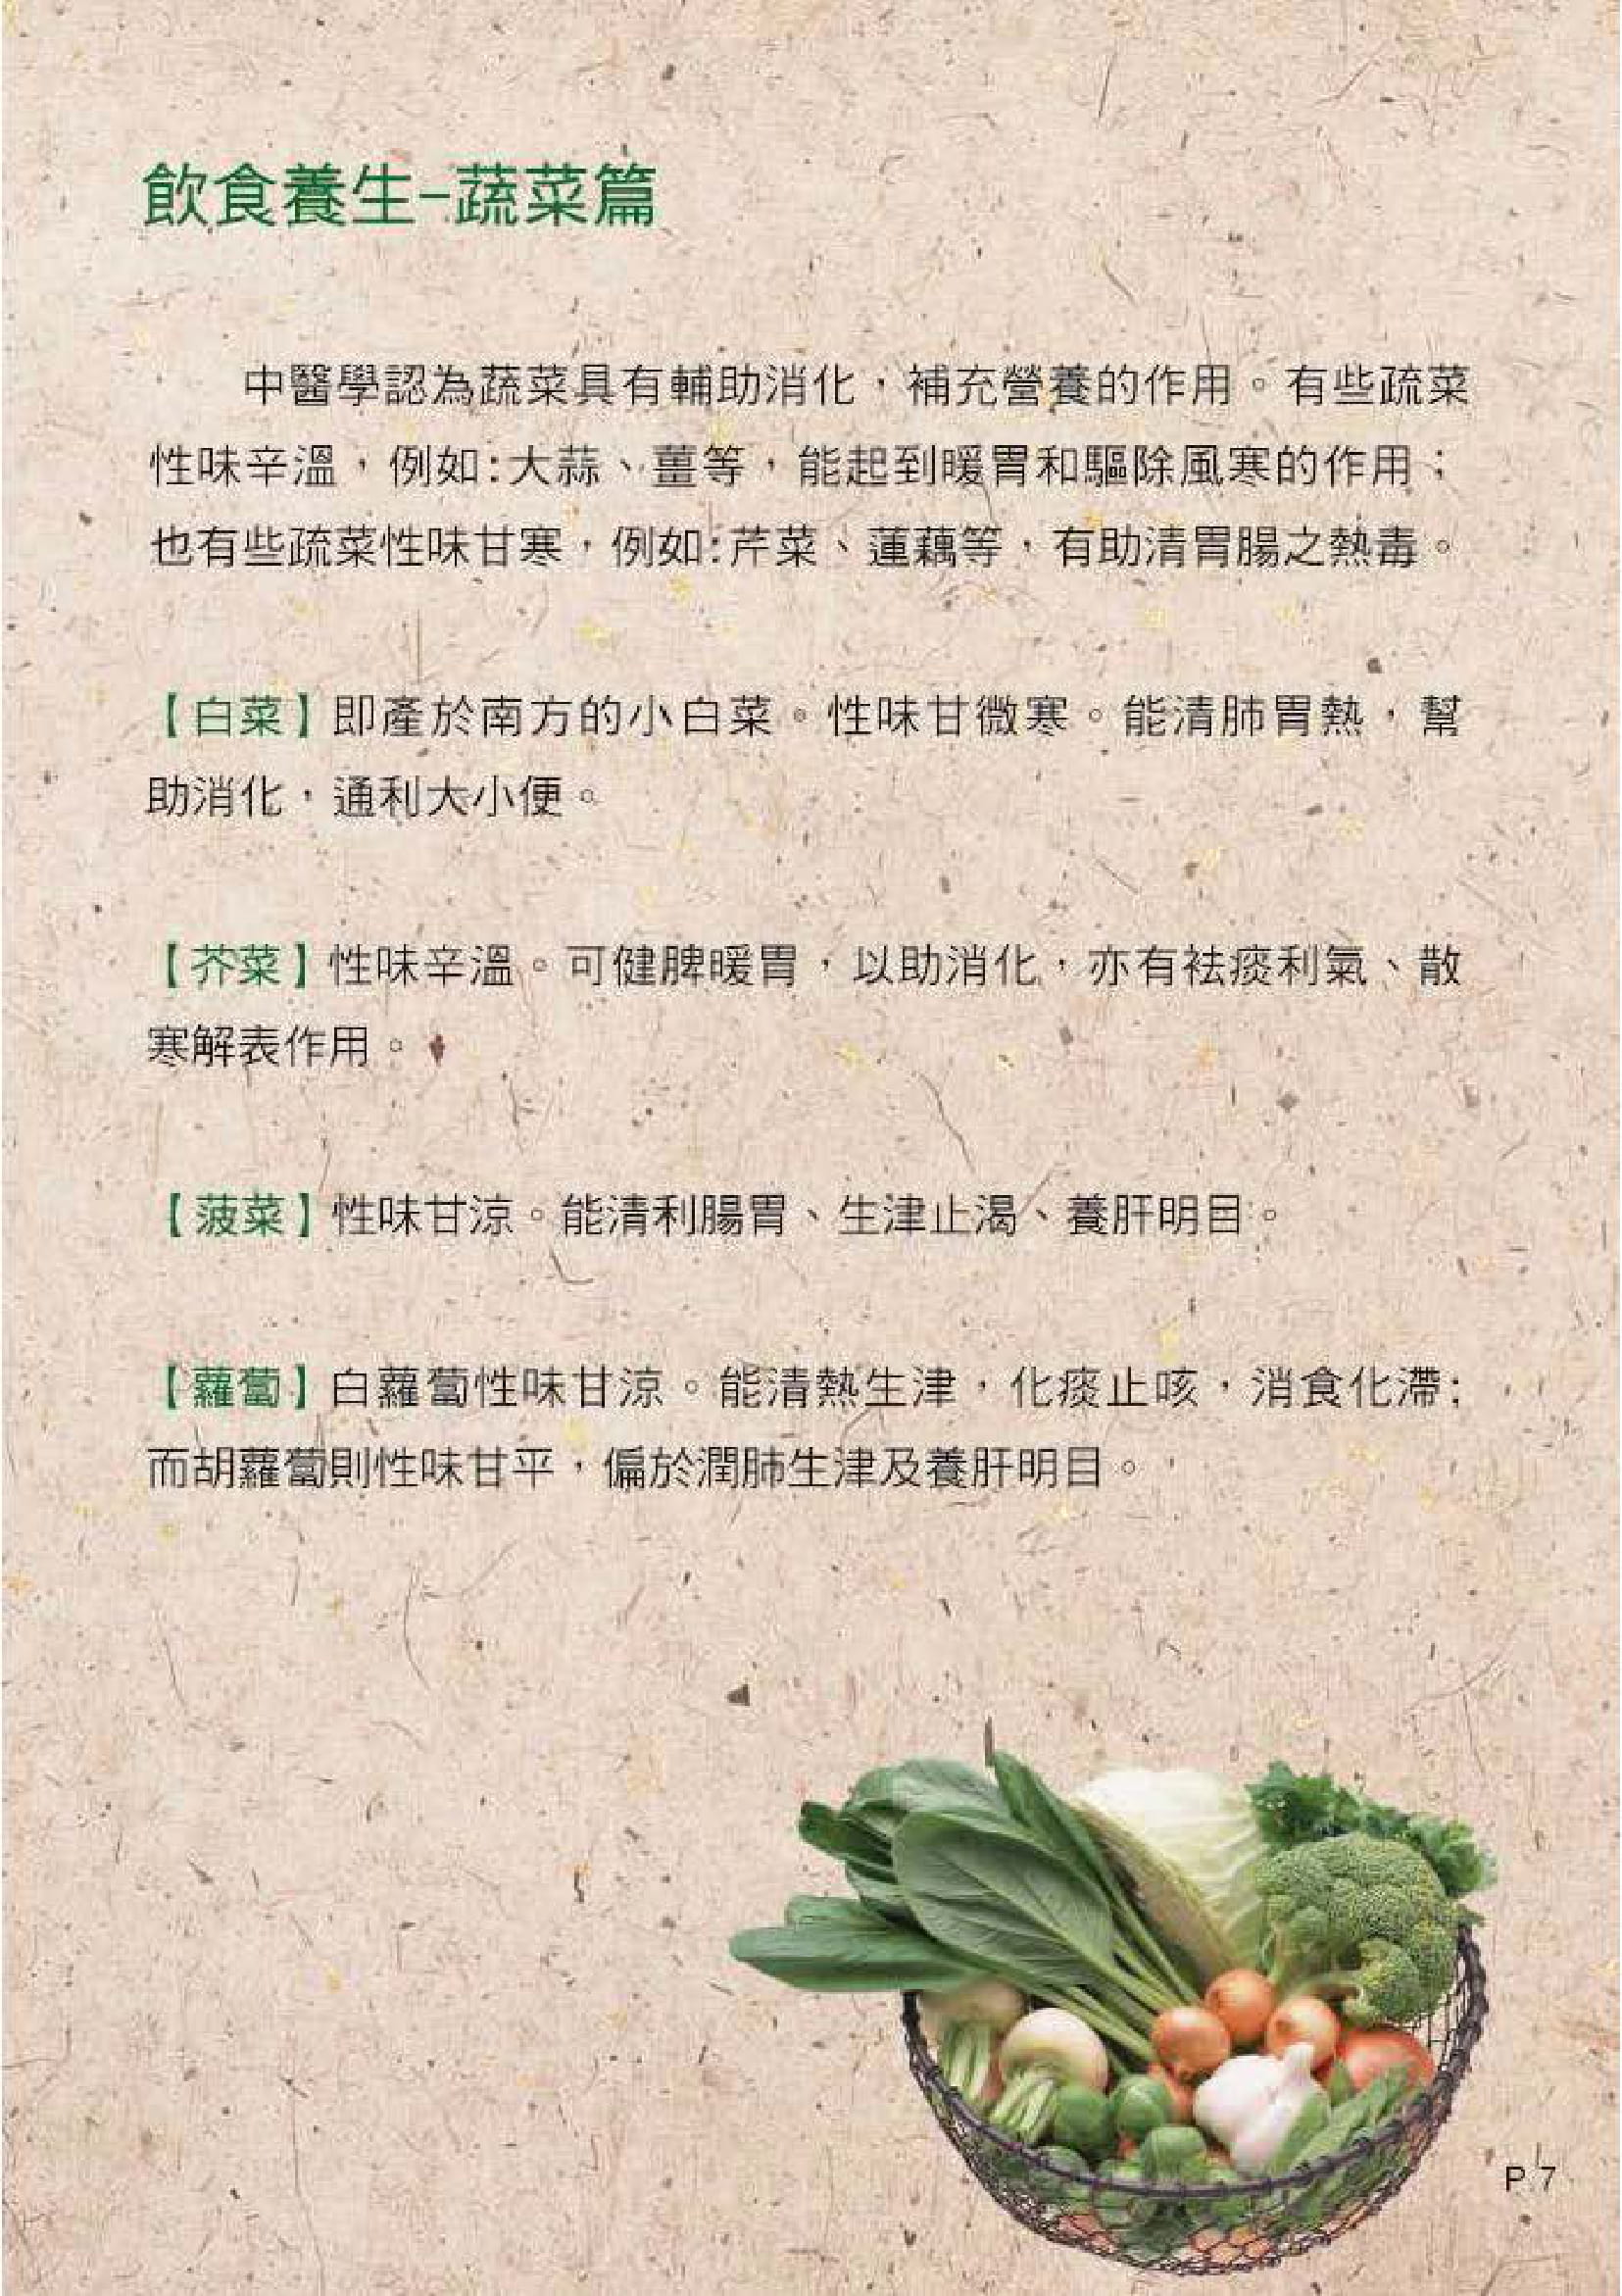 此图片展示《中医饮食养生 - 五谷与蔬果》刊物的第7页